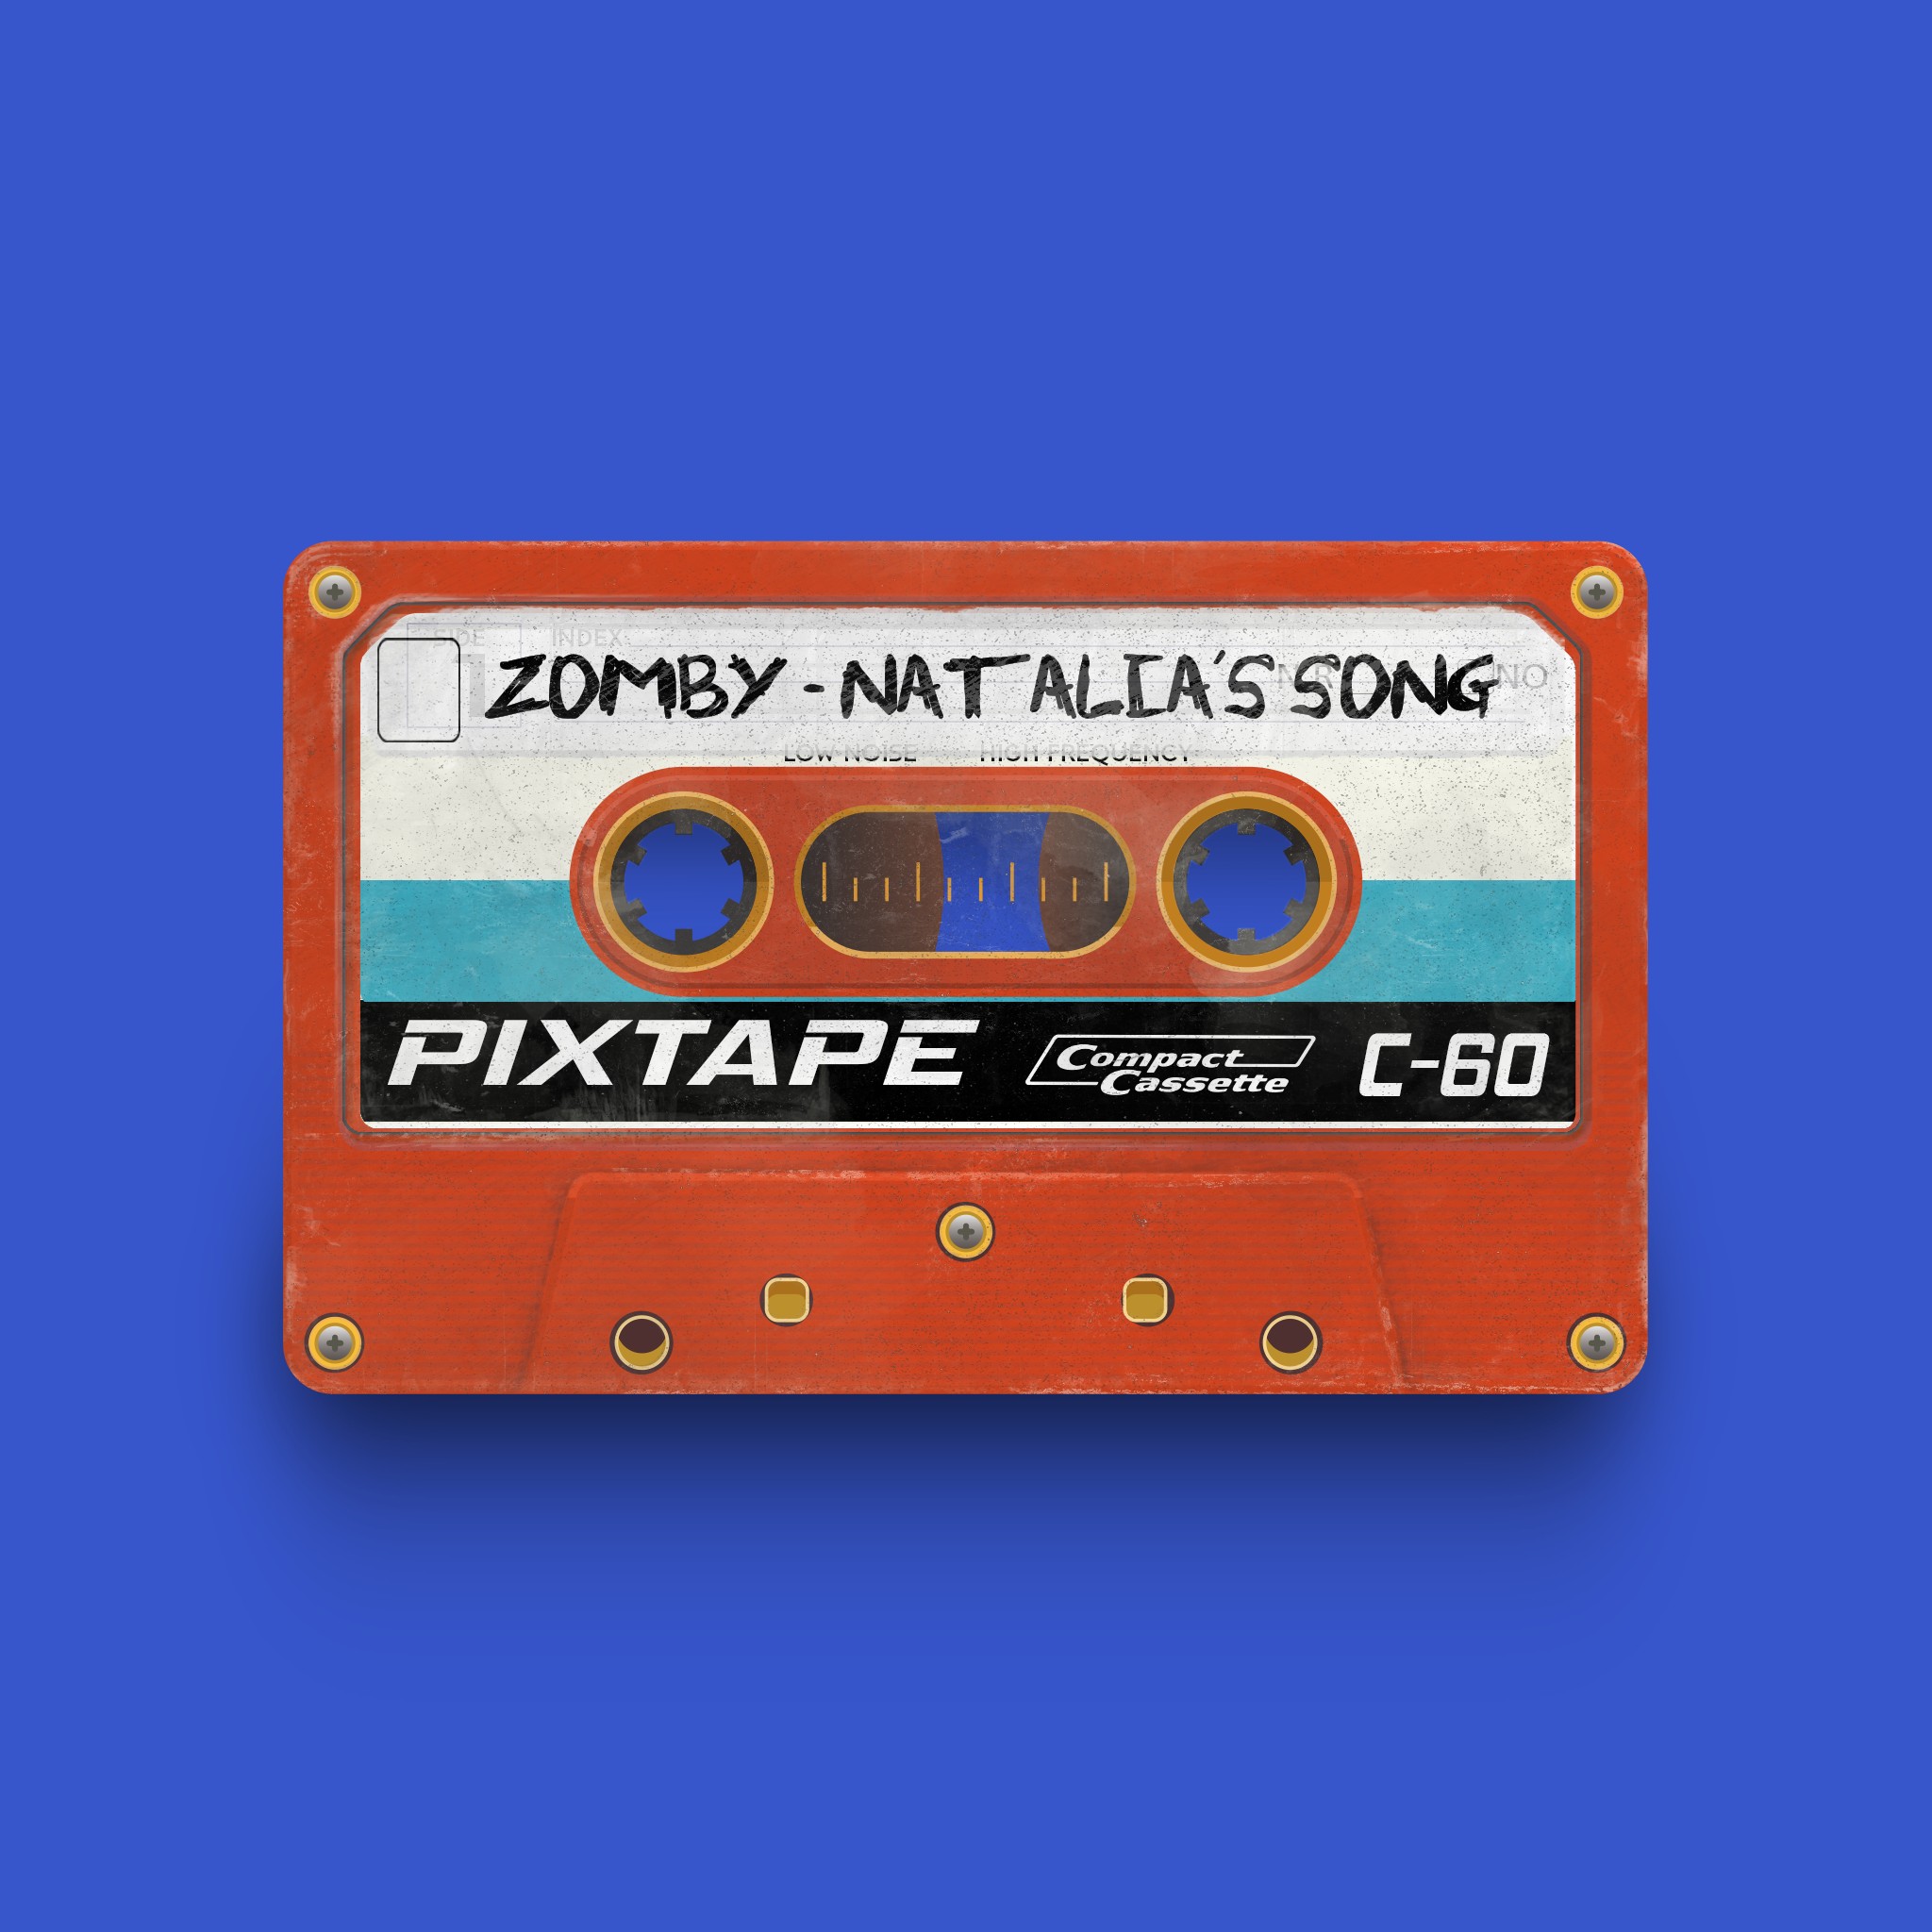 PixTape #52 | Zomby - Natalia's Song